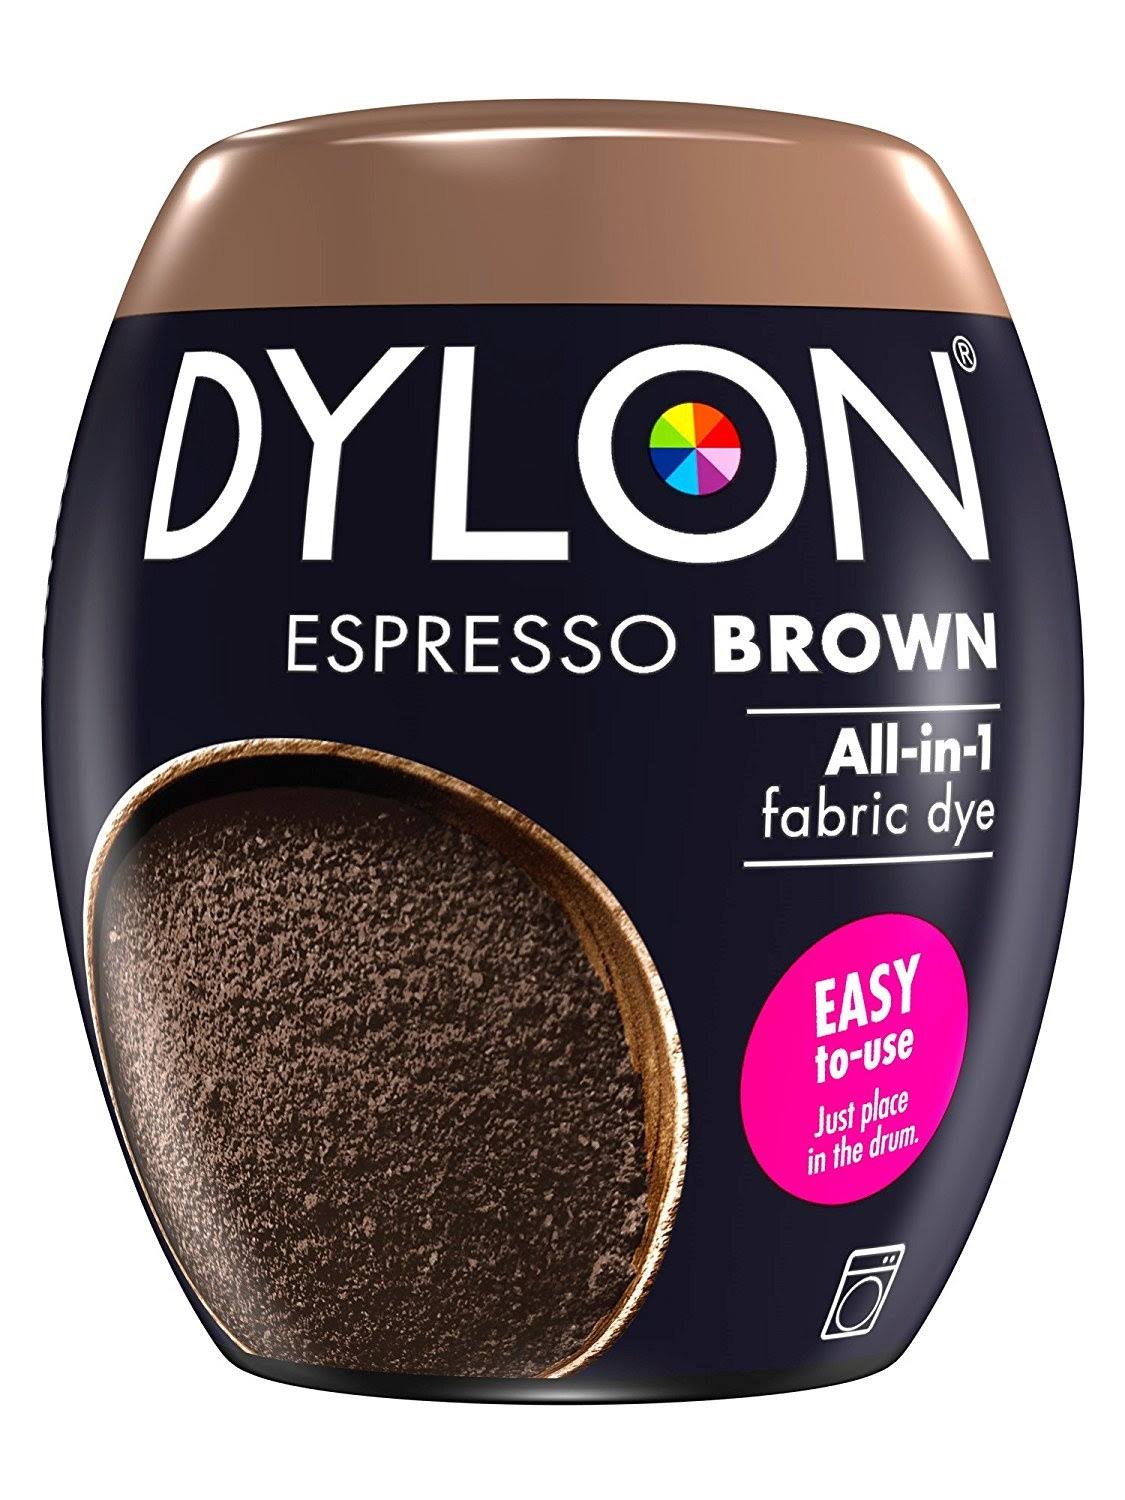 Dylon All-in-1 Fabric Dye - Espresso Brown, 350g